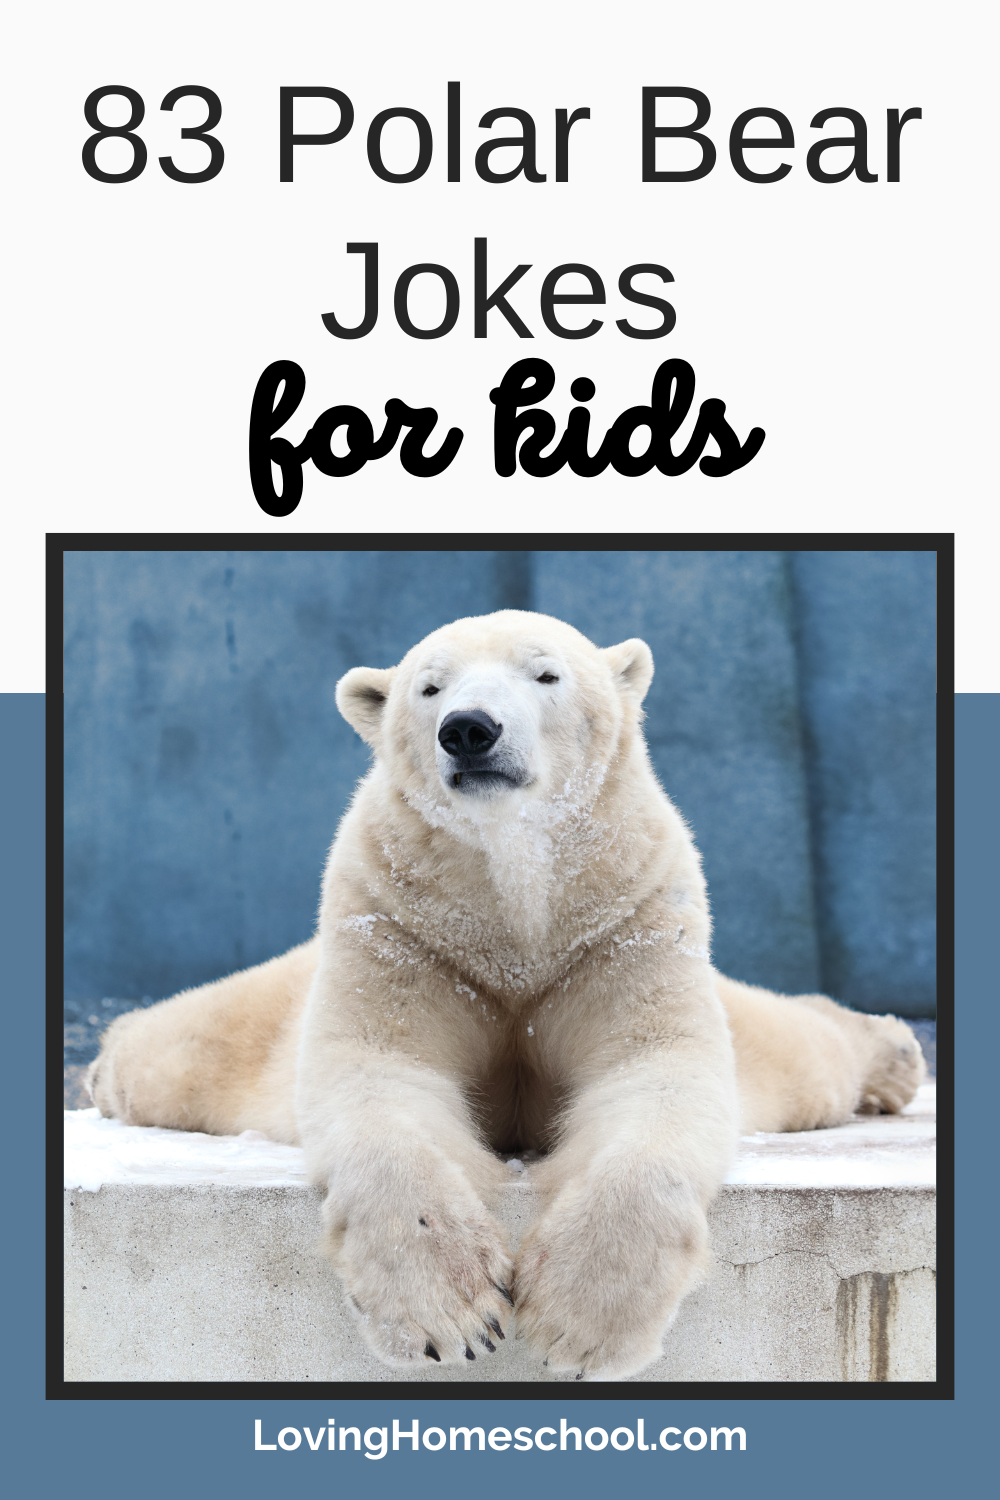 83 Polar Bear Jokes Pinterest Pin